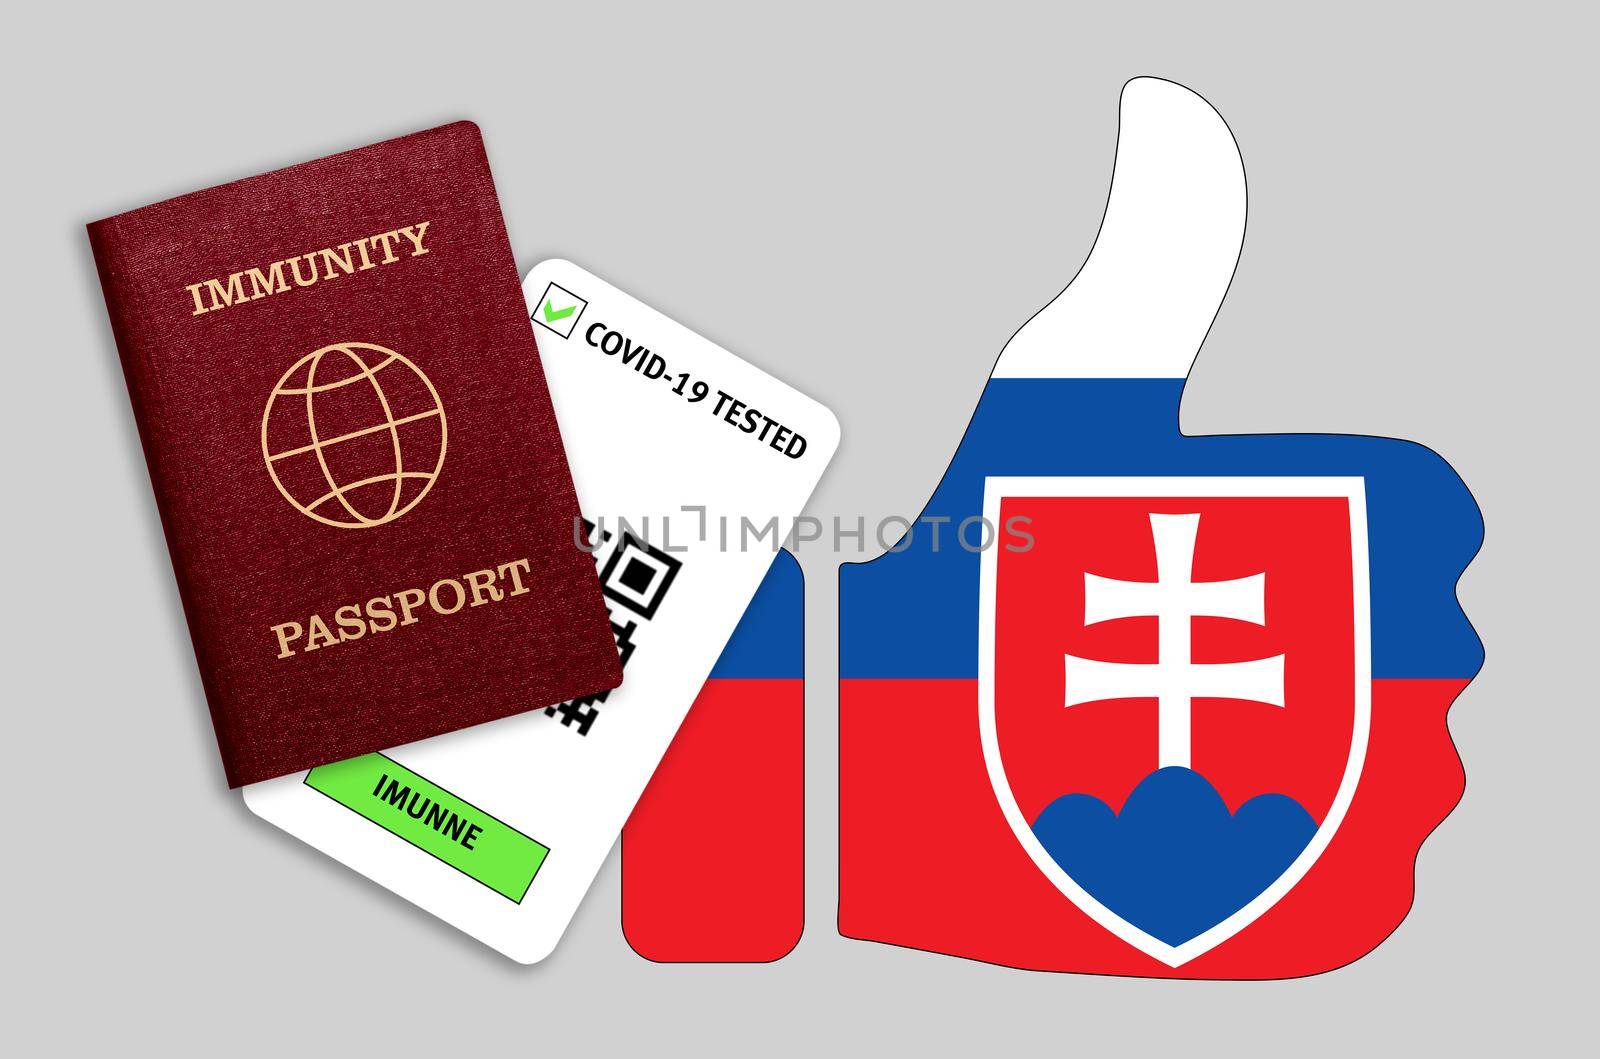 Immune passport and coronavirus test with thumb up with flag of Slovakia by galinasharapova